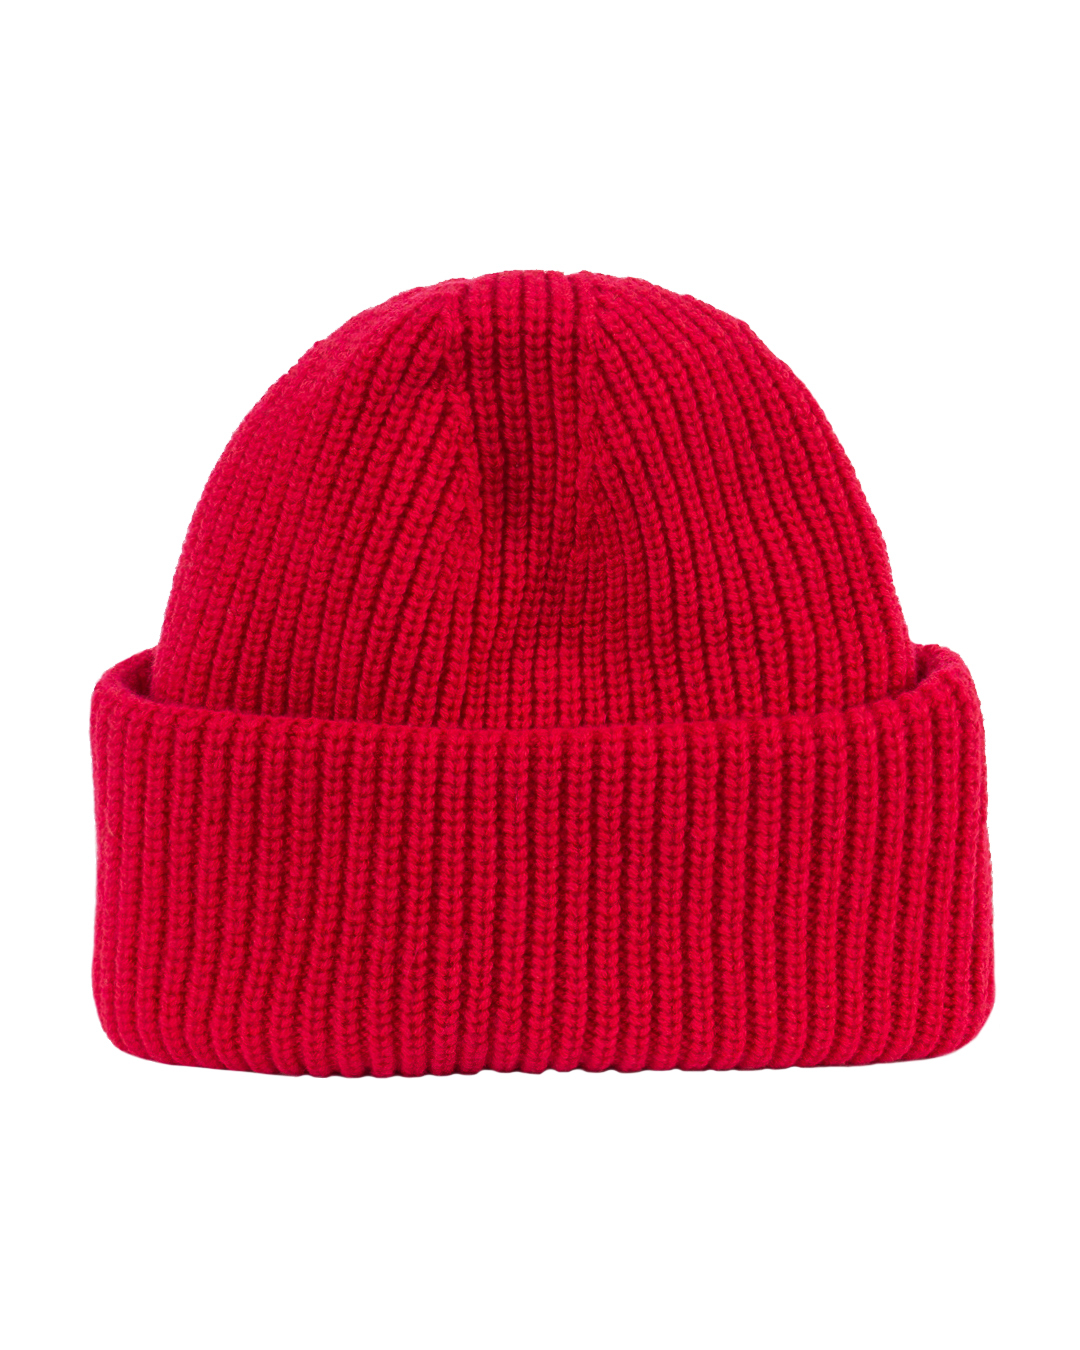 

шапка из шерсти и кашемира Free Age, Красный, W24.BN025.2030 красный UNI